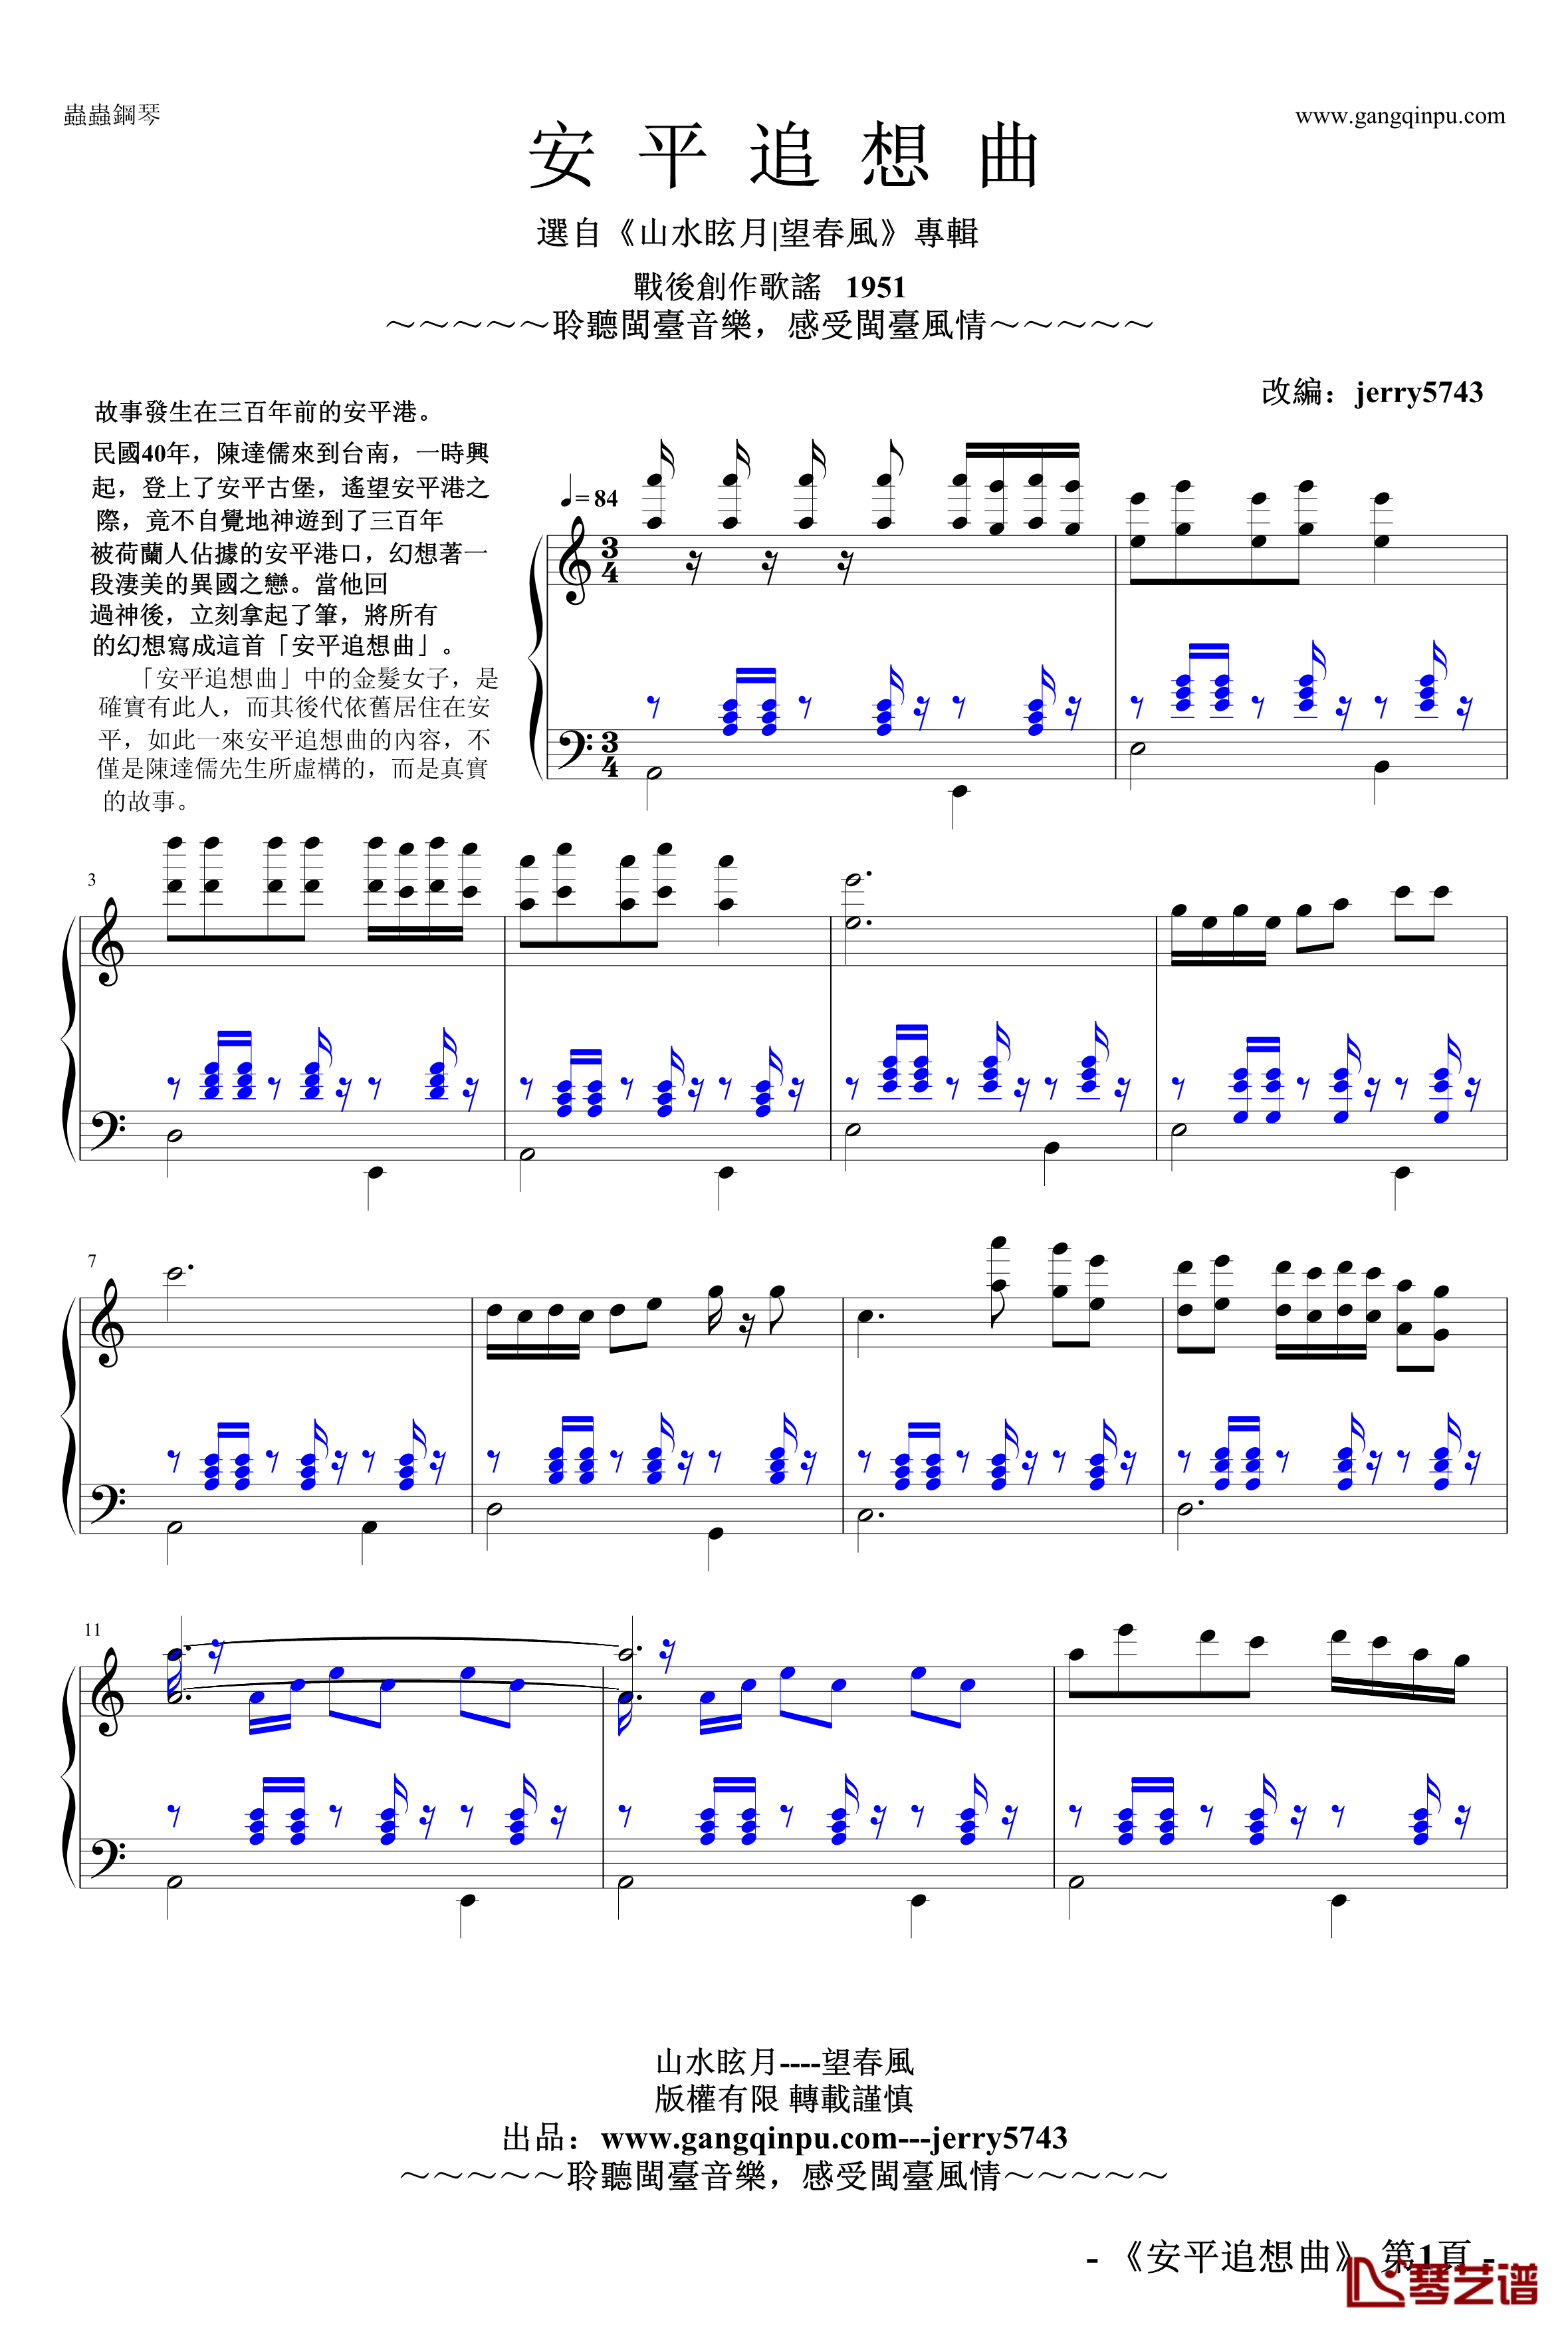 安平追想曲钢琴谱-jerry5743-望春風No. 2